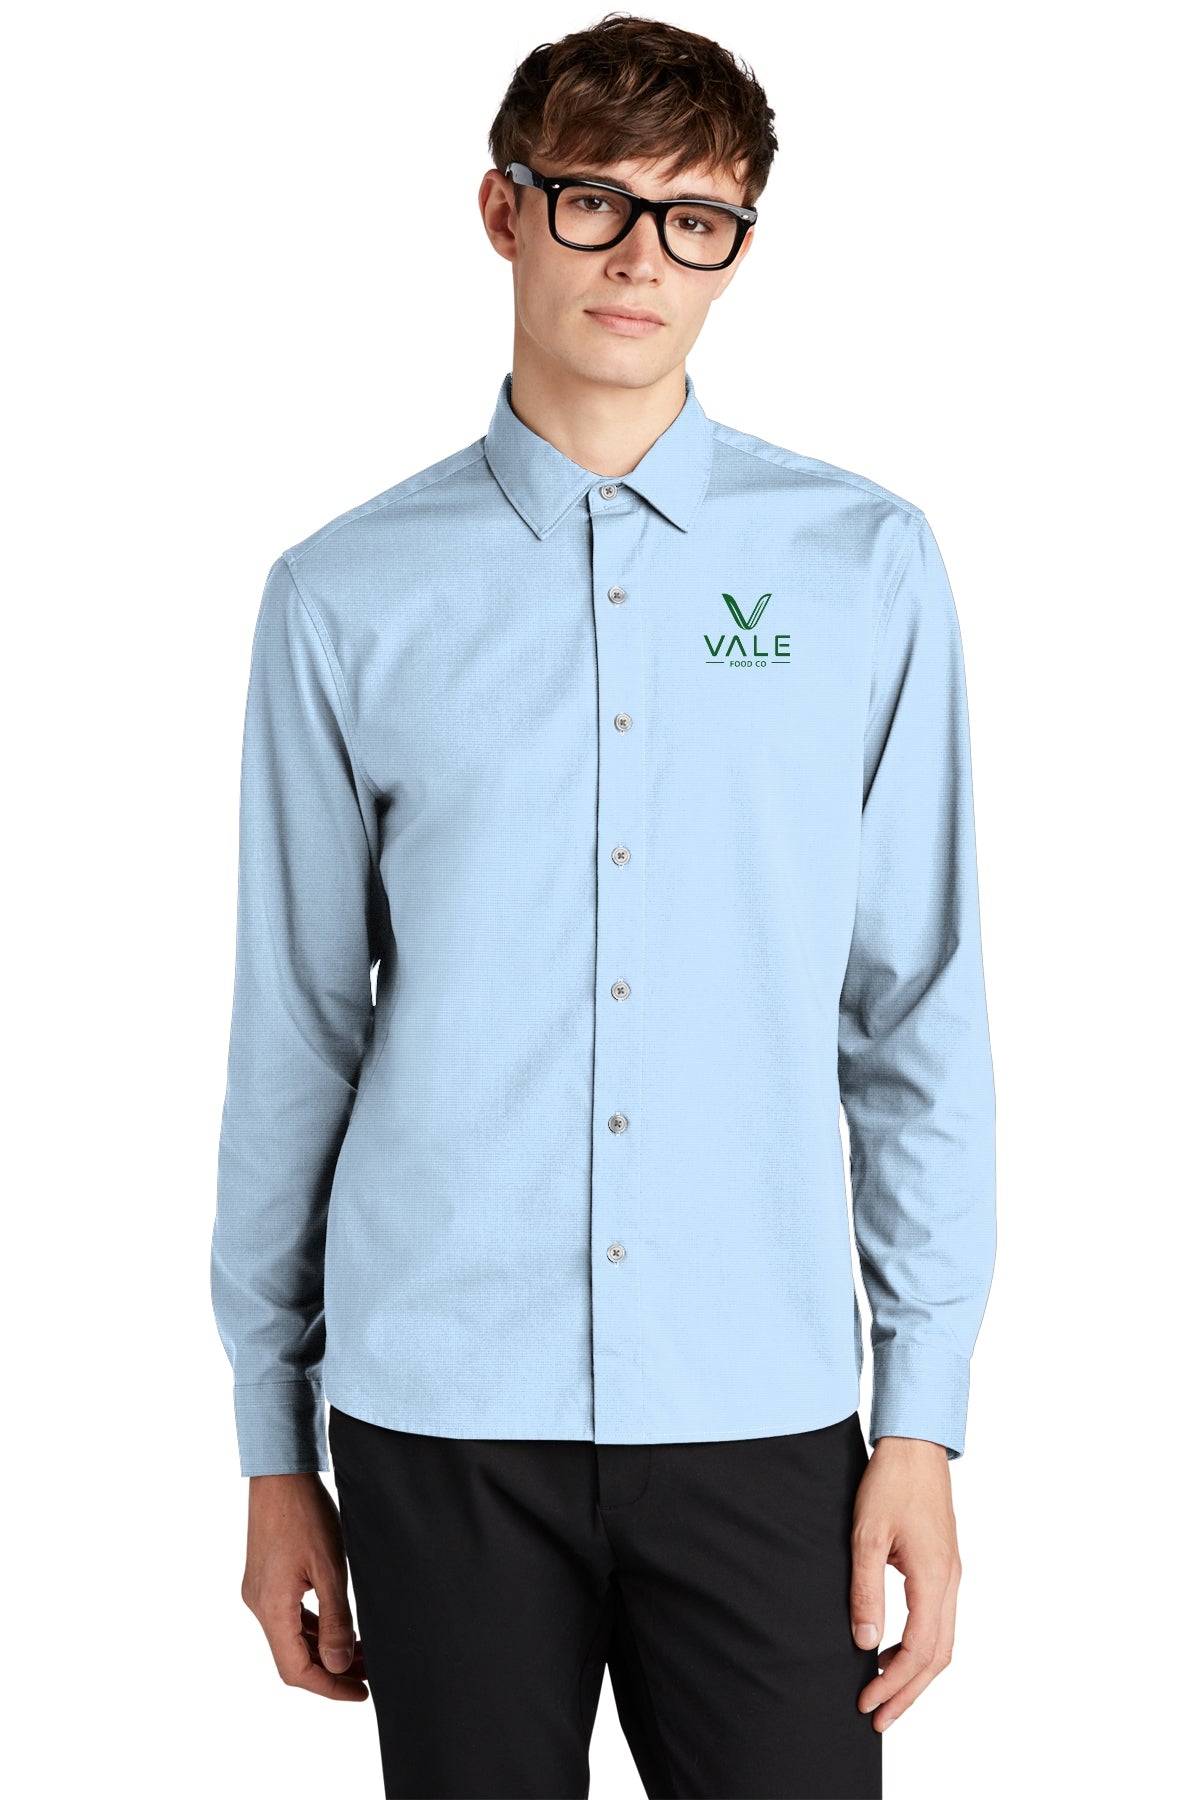 Mercer-Mettle Long Sleeve Stretch Woven Shirt